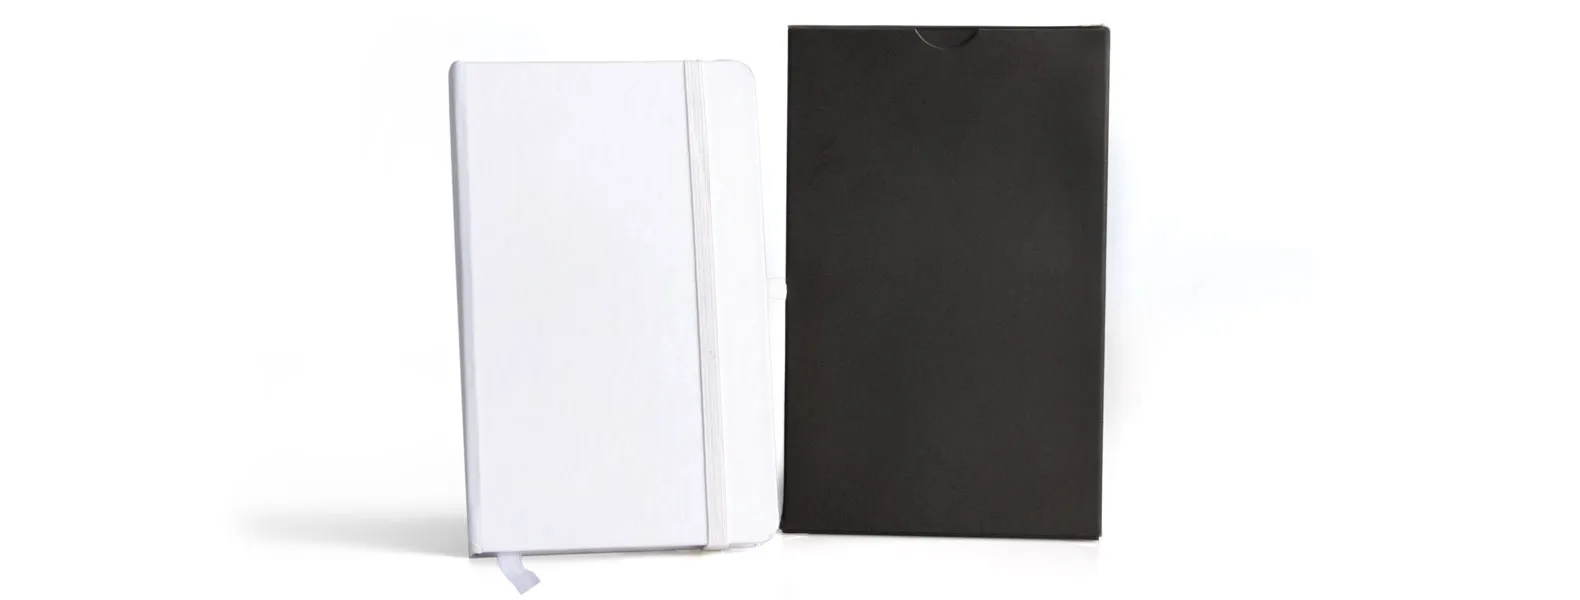 Caderno para anotações branco com capa dura. Conta com 80 folhas não pautadas, marcador de página, porta caneta e elástico para fechamento. Gramatura da folha de 70 g/m2.